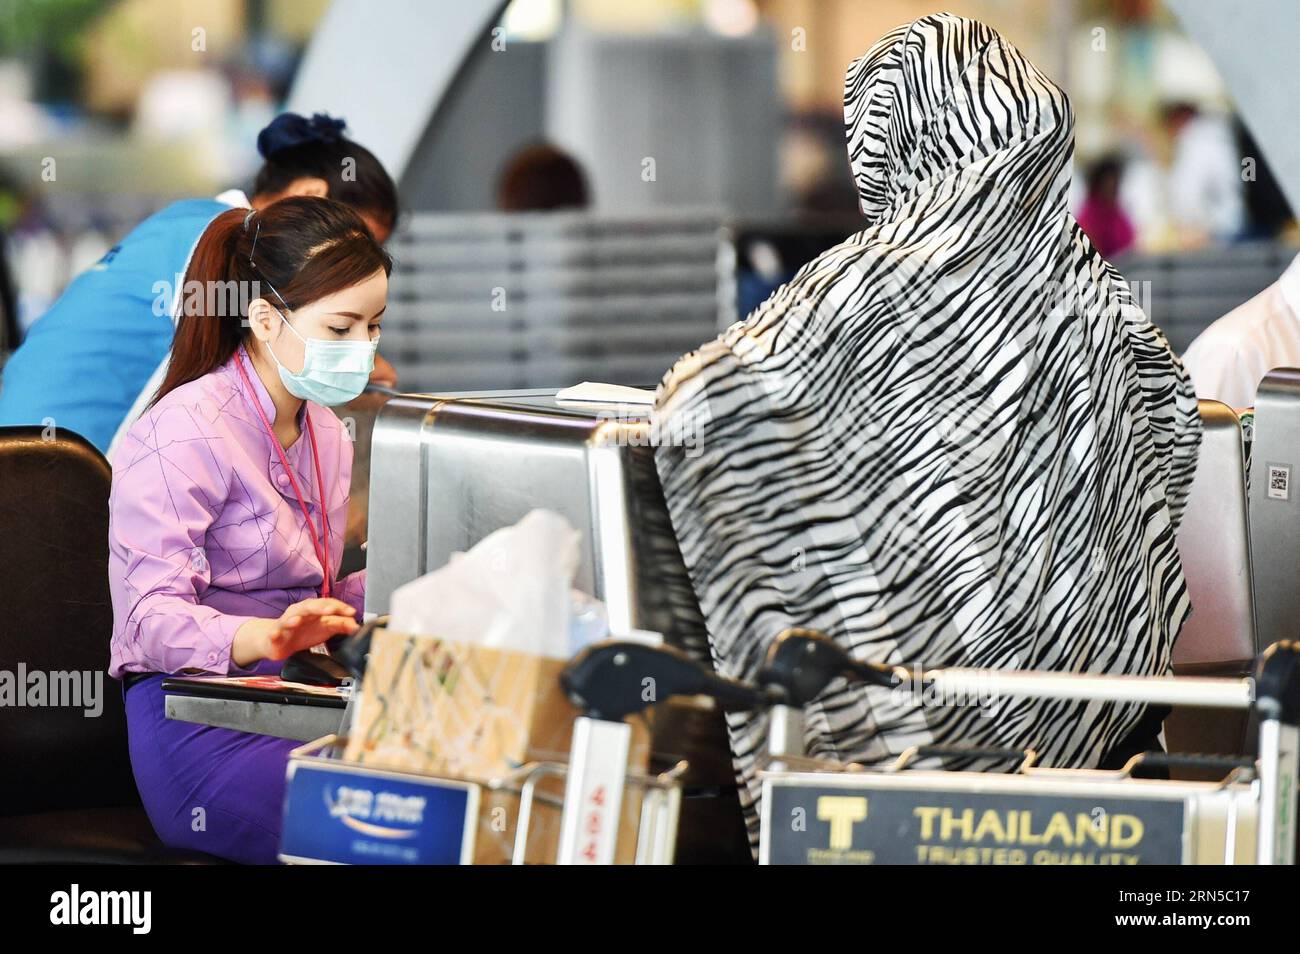 (150620) -- BANGKOK, le 20 juin 2015 -- Un employé est vu portant un masque facial alors qu'il travaillait à un comptoir d'enregistrement à l'aéroport Suvarnabhumi de Bangkok, Thaïlande, le 20 juin 2015. Le ministère de la Santé publique de Thaïlande a confirmé jeudi le premier cas de syndrome respiratoire du Moyen-Orient (mers). A Bangkok, la capitale du pays et un centre de transport international, les citoyens et les voyageurs ont commencé à adopter des méthodes préventives telles que le port de masques protecteurs pour le visage. THAILAND-BANGKOK-mers-DISEASE-PREVENTION LixMangmang PUBLICATIONxNOTxINxCHN 150620 Bangkok juin 20 2015 un personnel EST PRÉSENT Banque D'Images